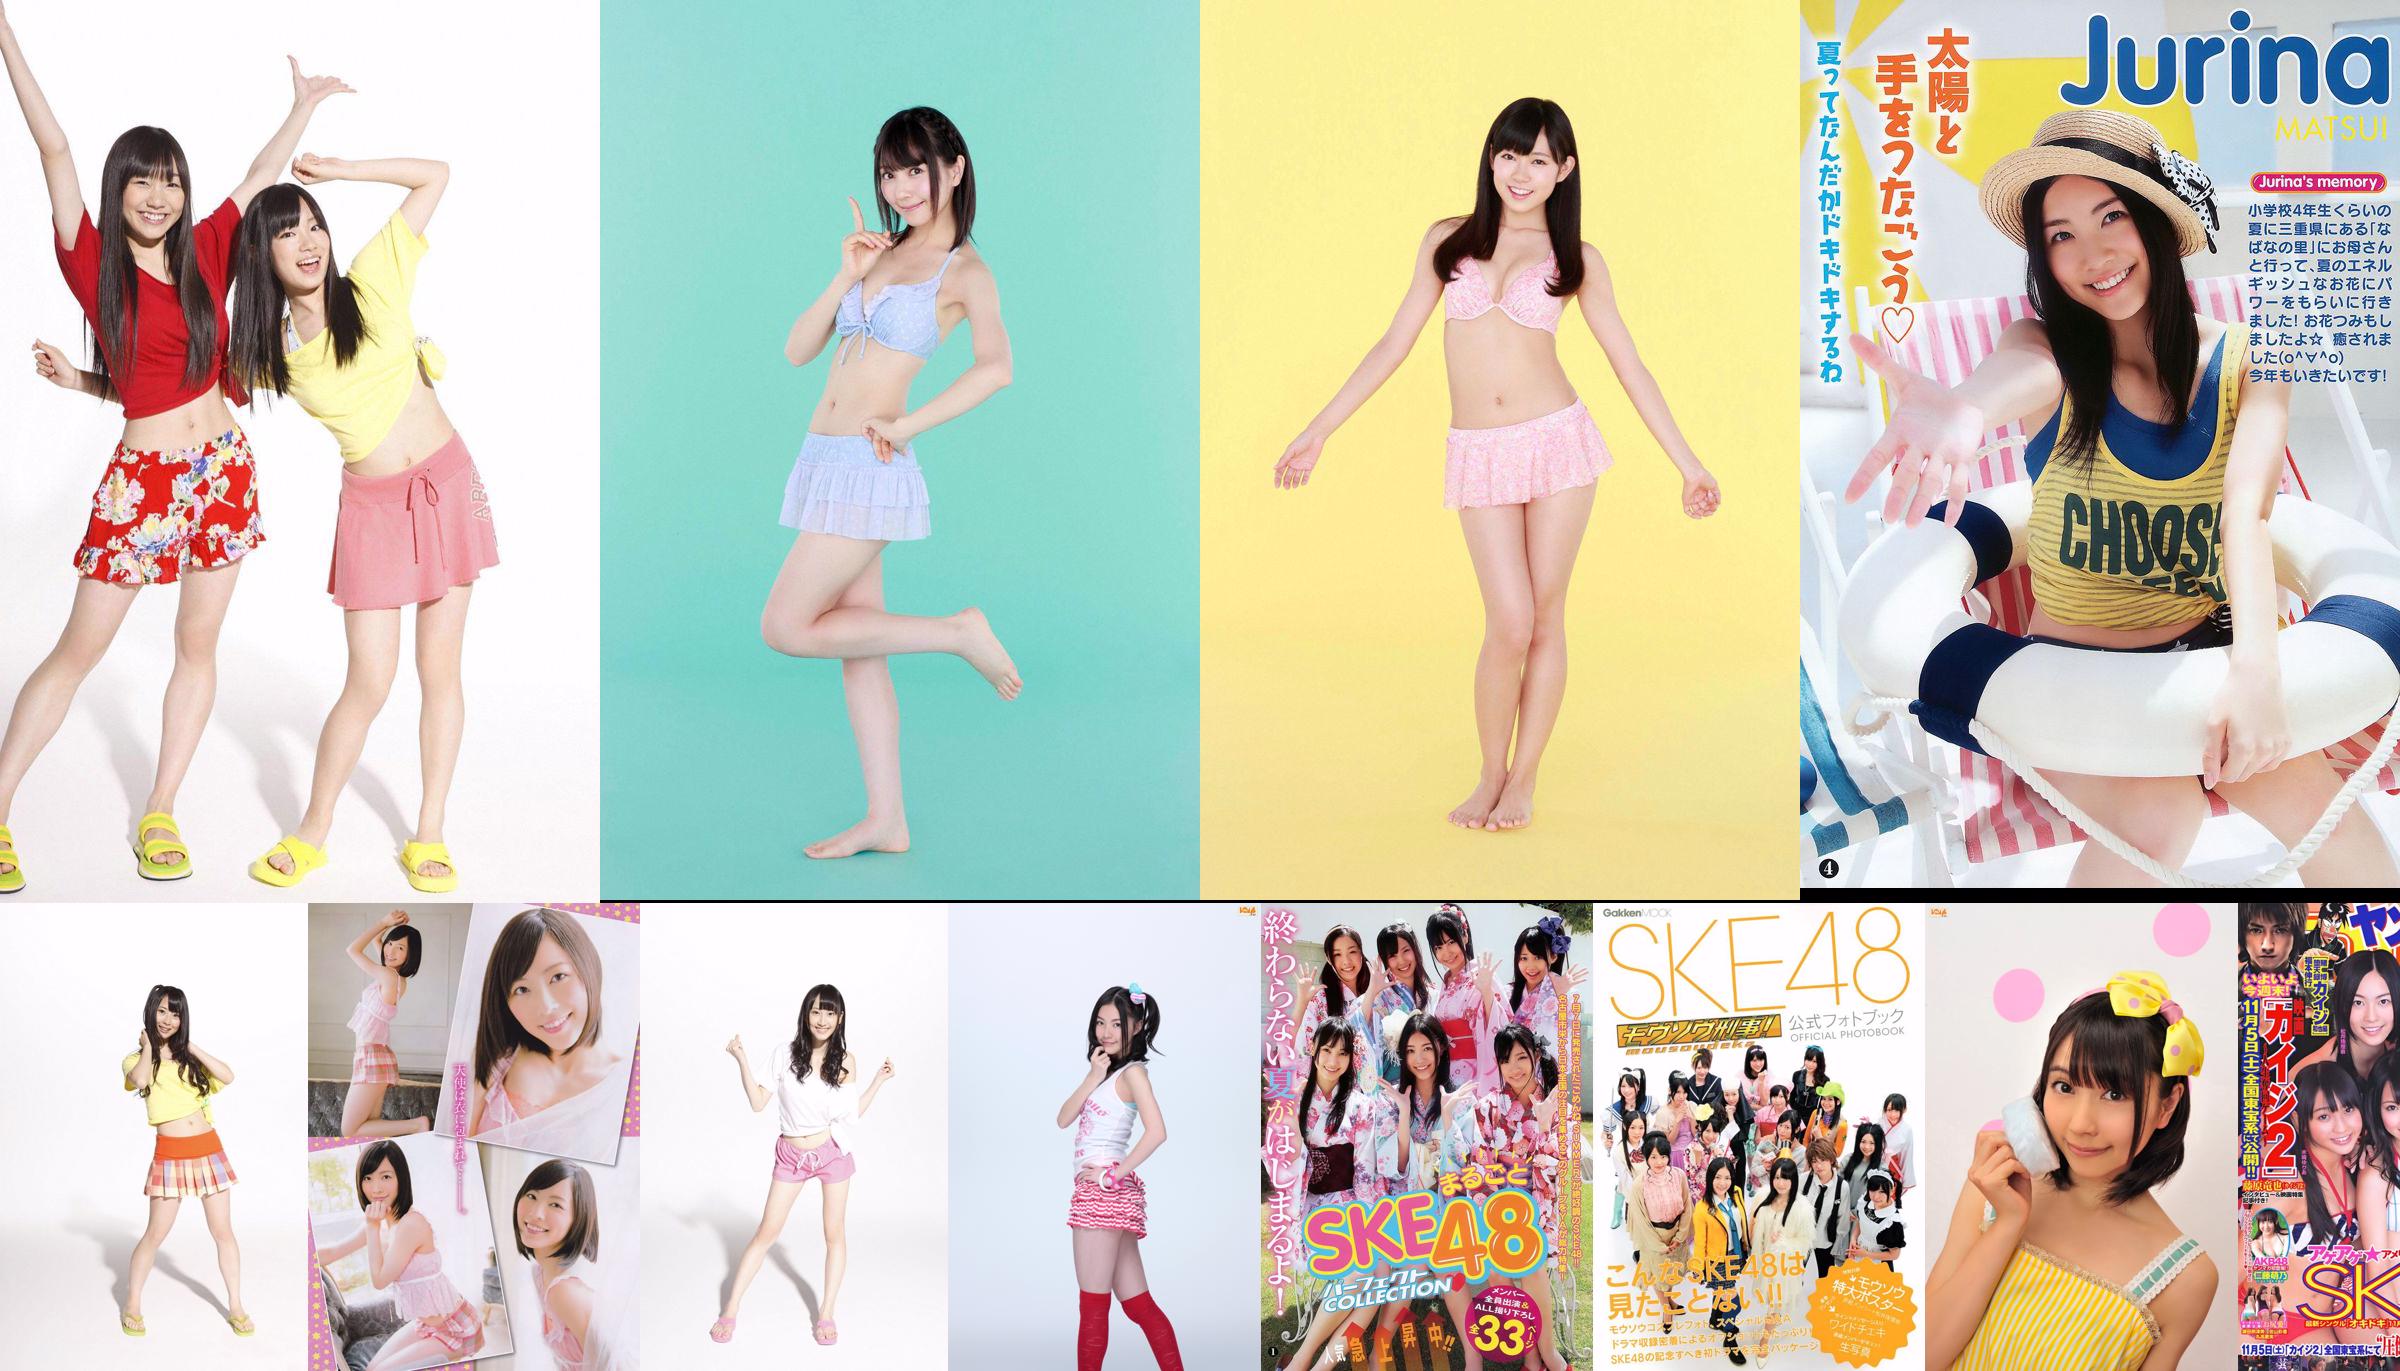 SKE48 Aikari Tree, Yoshioka Riho, Sariyama Mariko SAKURACO Tachibana Rin [Weekly Playboy] 2014 No.32 Photo Magazine No.b33abf หน้า 1